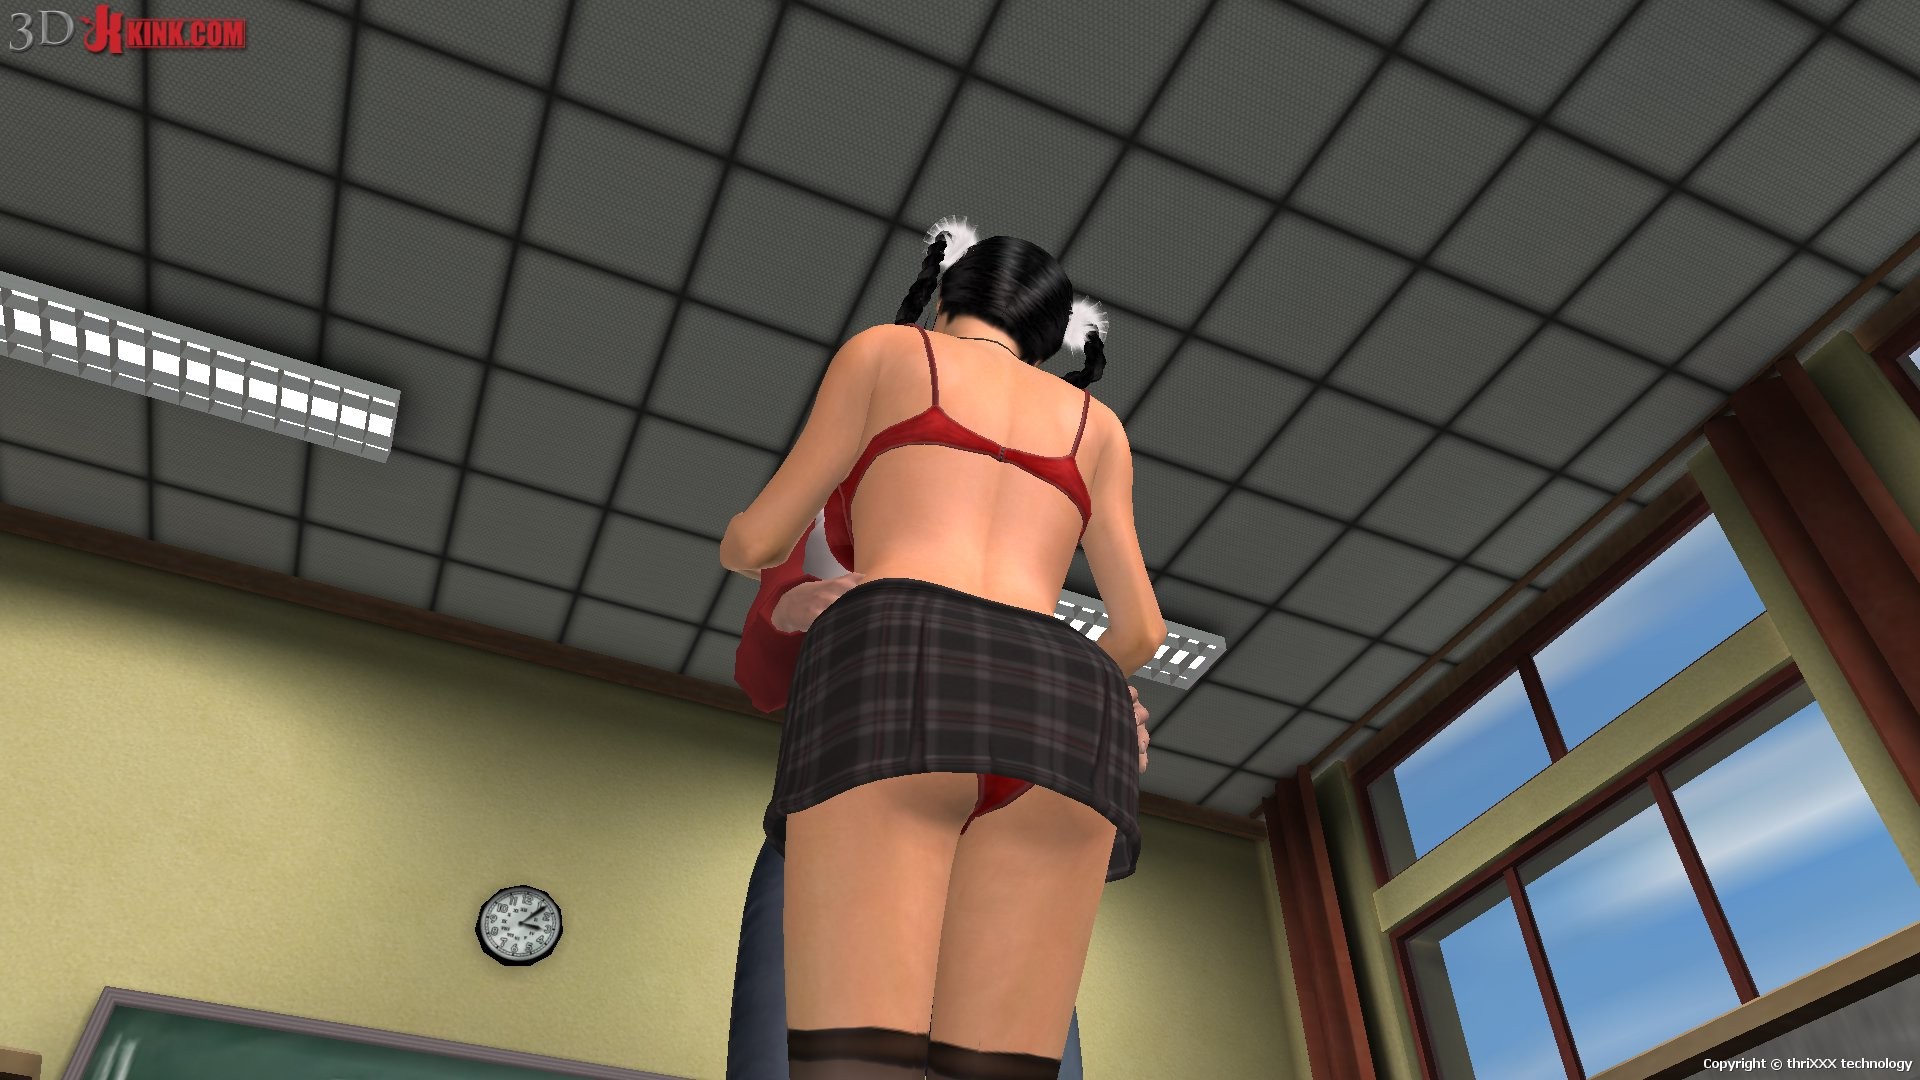 Action sexuelle bdsm chaude créée dans un jeu sexuel 3d fétichiste virtuel !
 #69623564